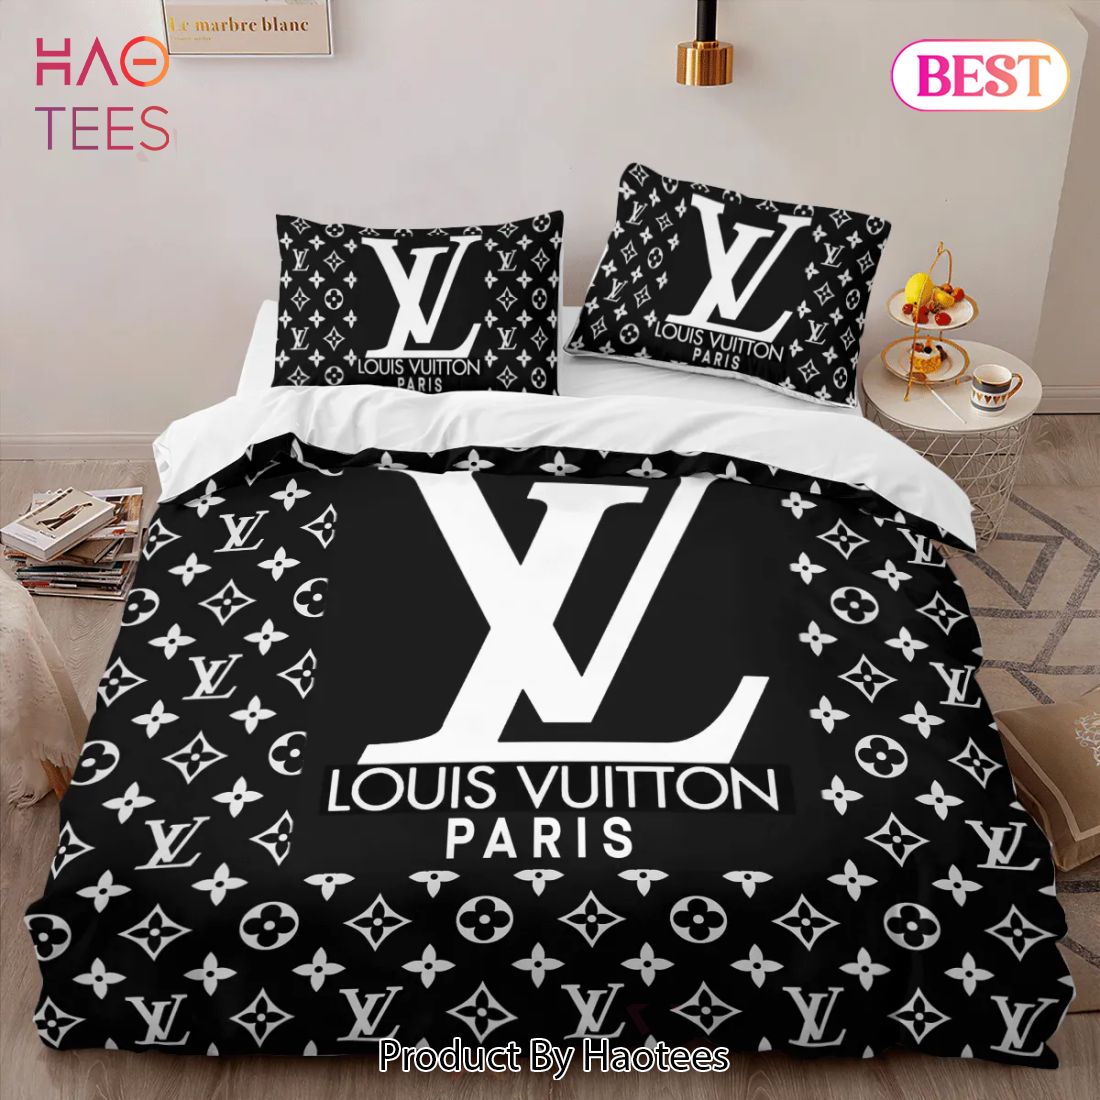 HOT LV Louis Vuitton Paris Bedding Set 100% New